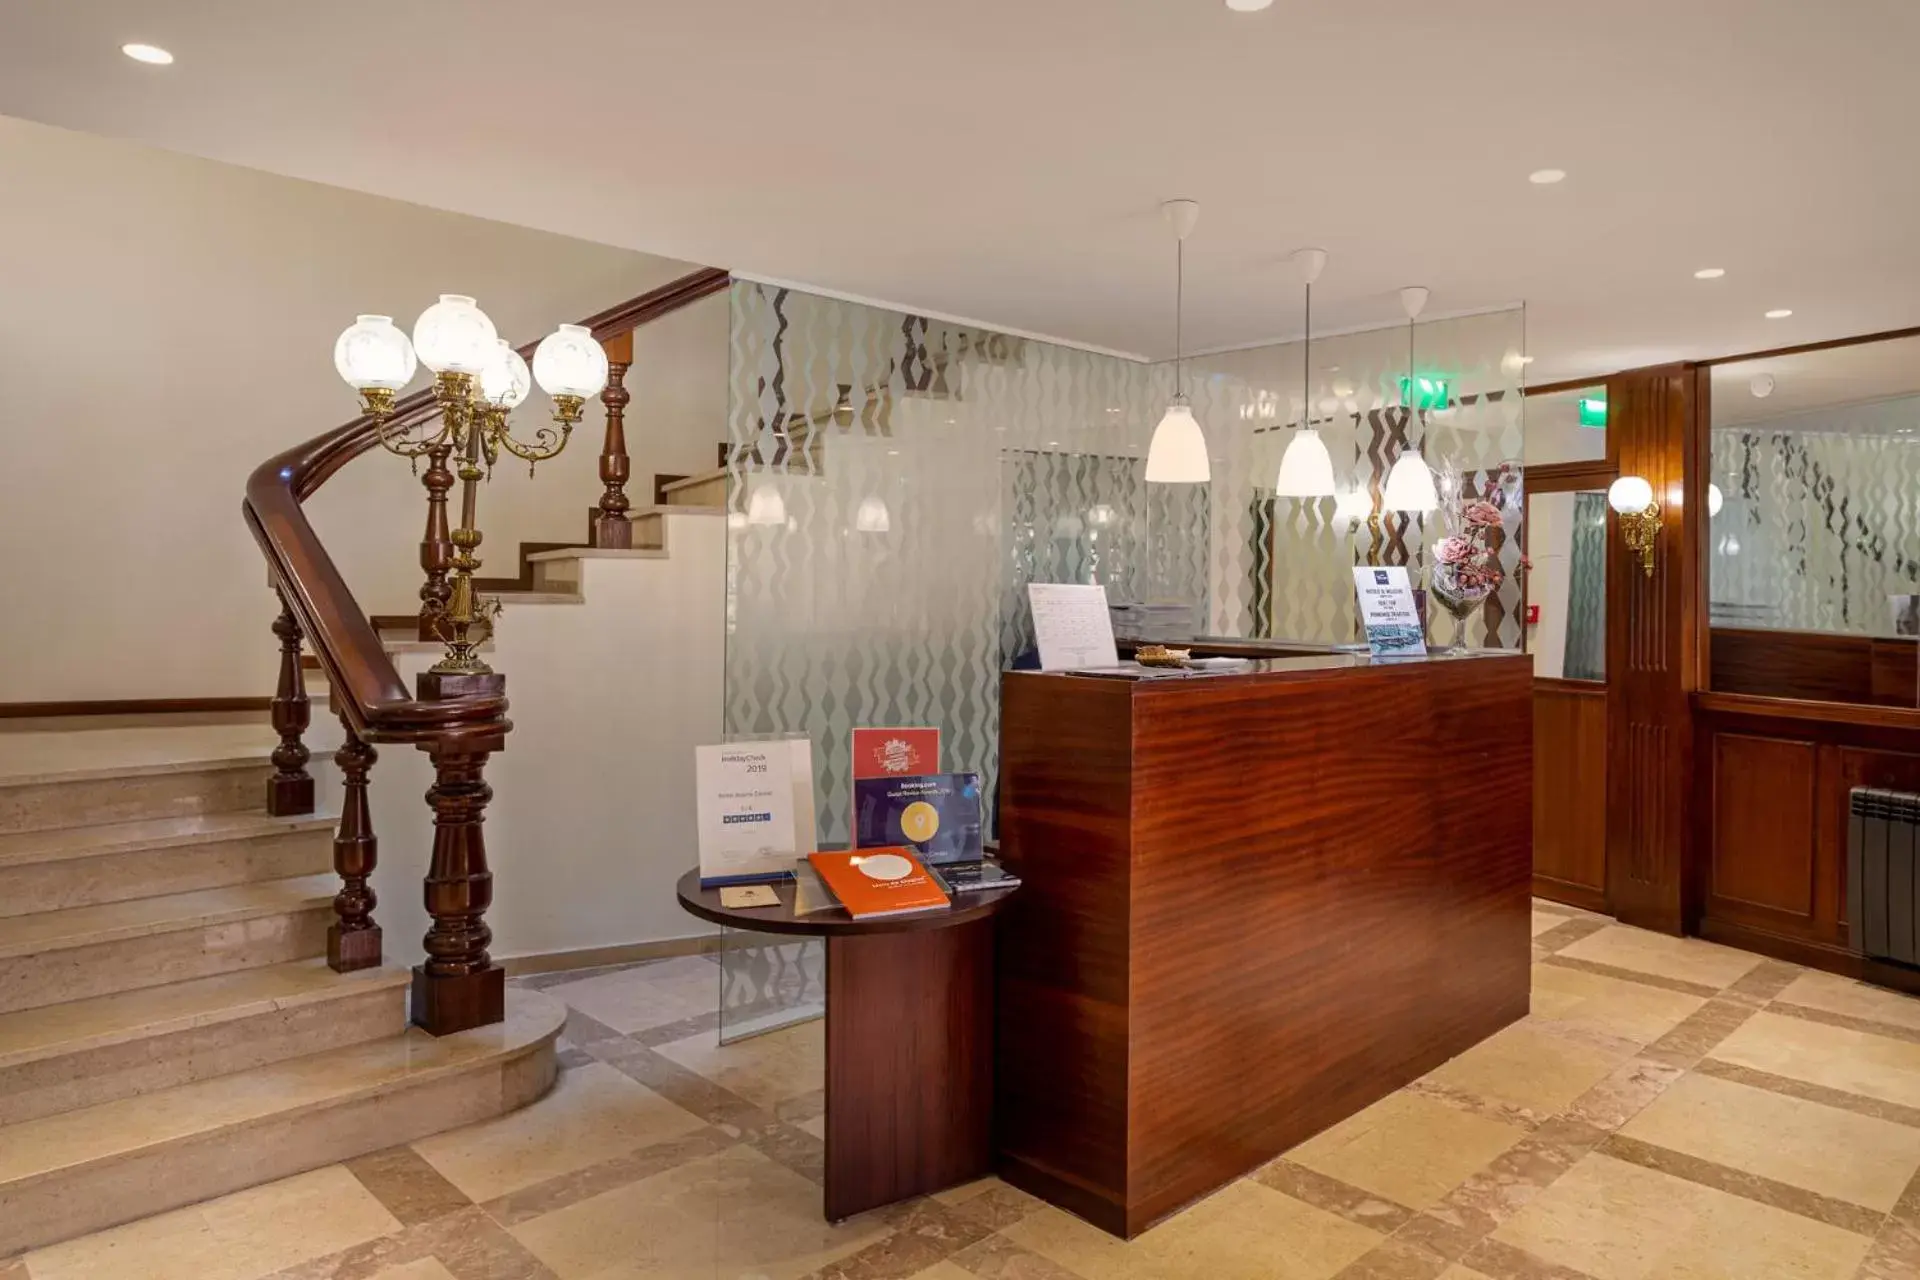 Lobby or reception, Lobby/Reception in Hotel Aveiro Center